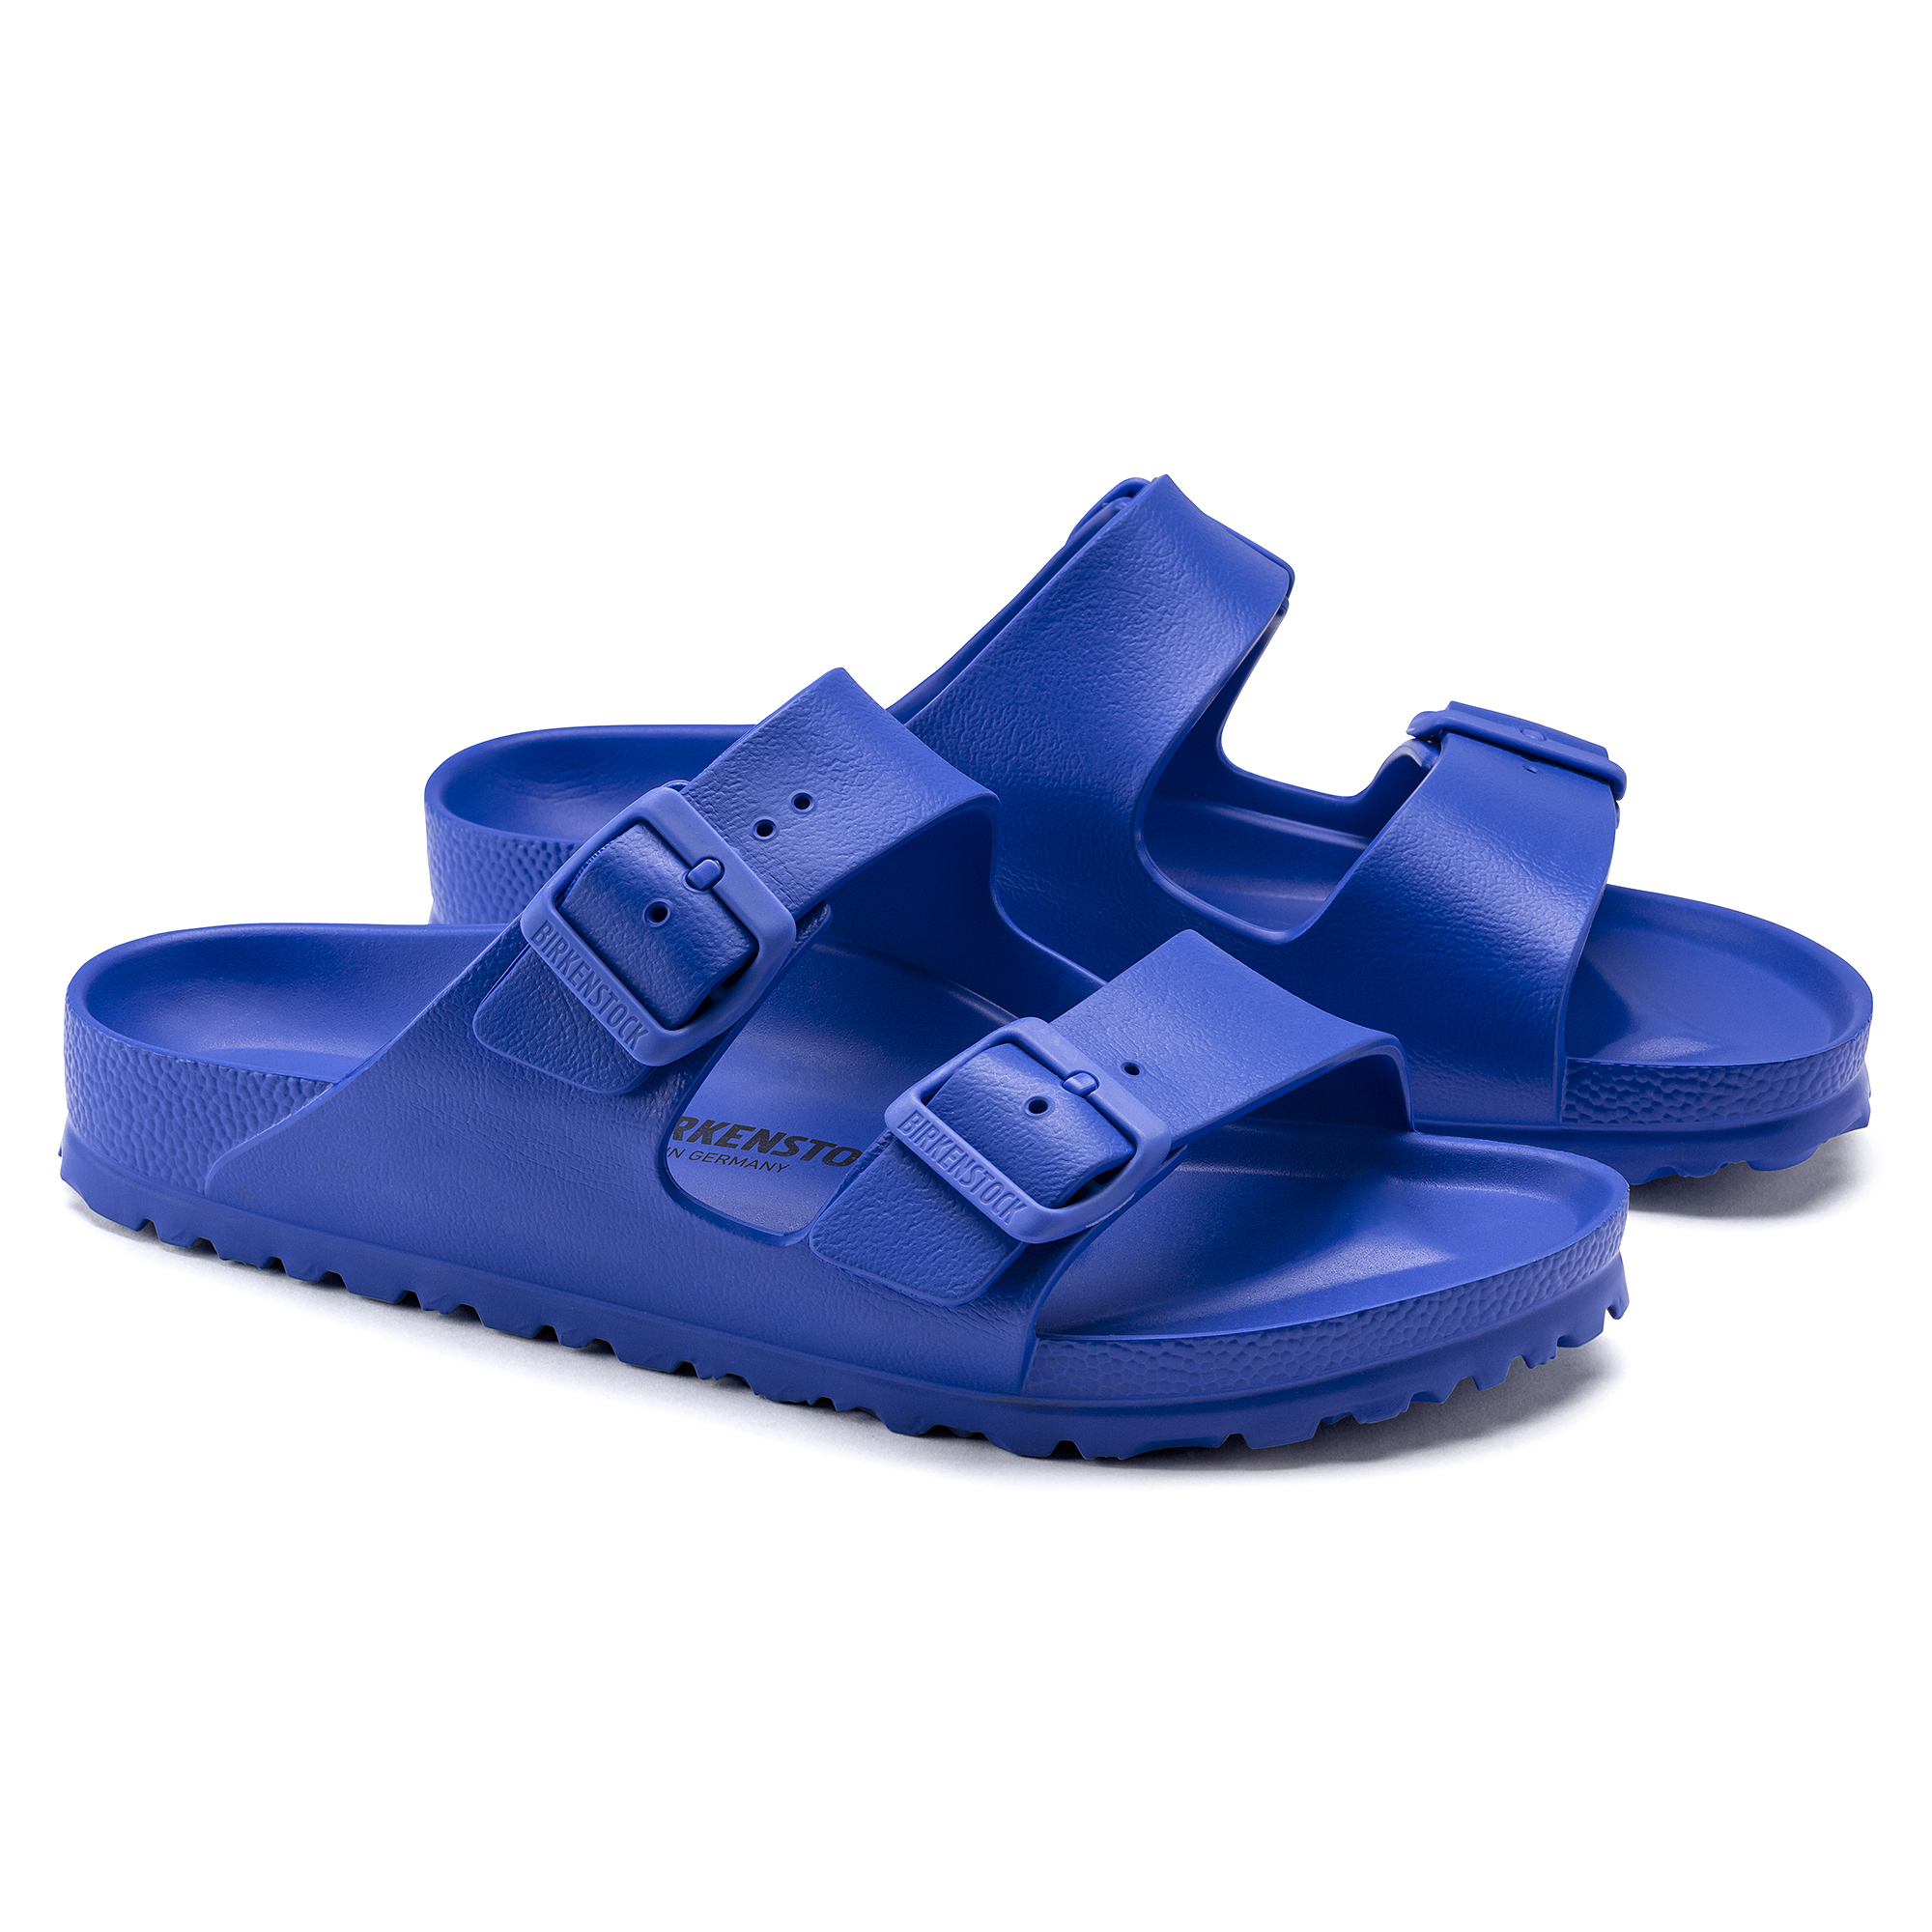 Katastrophal Banzai Geige blue birkenstock sandals Übertreiben System ...